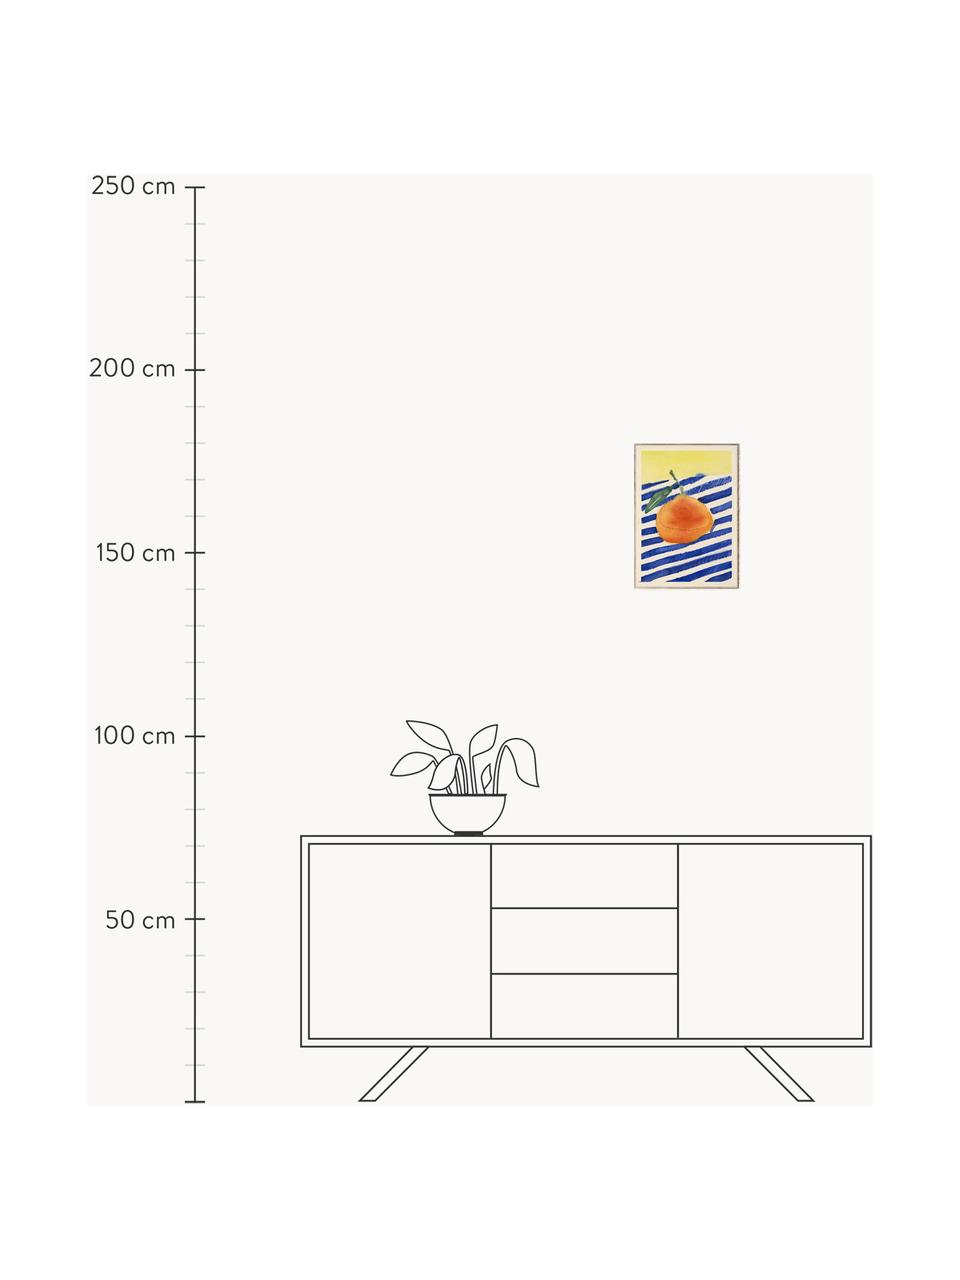 Poster Orange, 210 g de papier mat de la marque Hahnemühle, impression numérique avec 10 couleurs résistantes aux UV, Orange, bleu foncé, jaune pâle, larg. 30 x haut. 40 cm